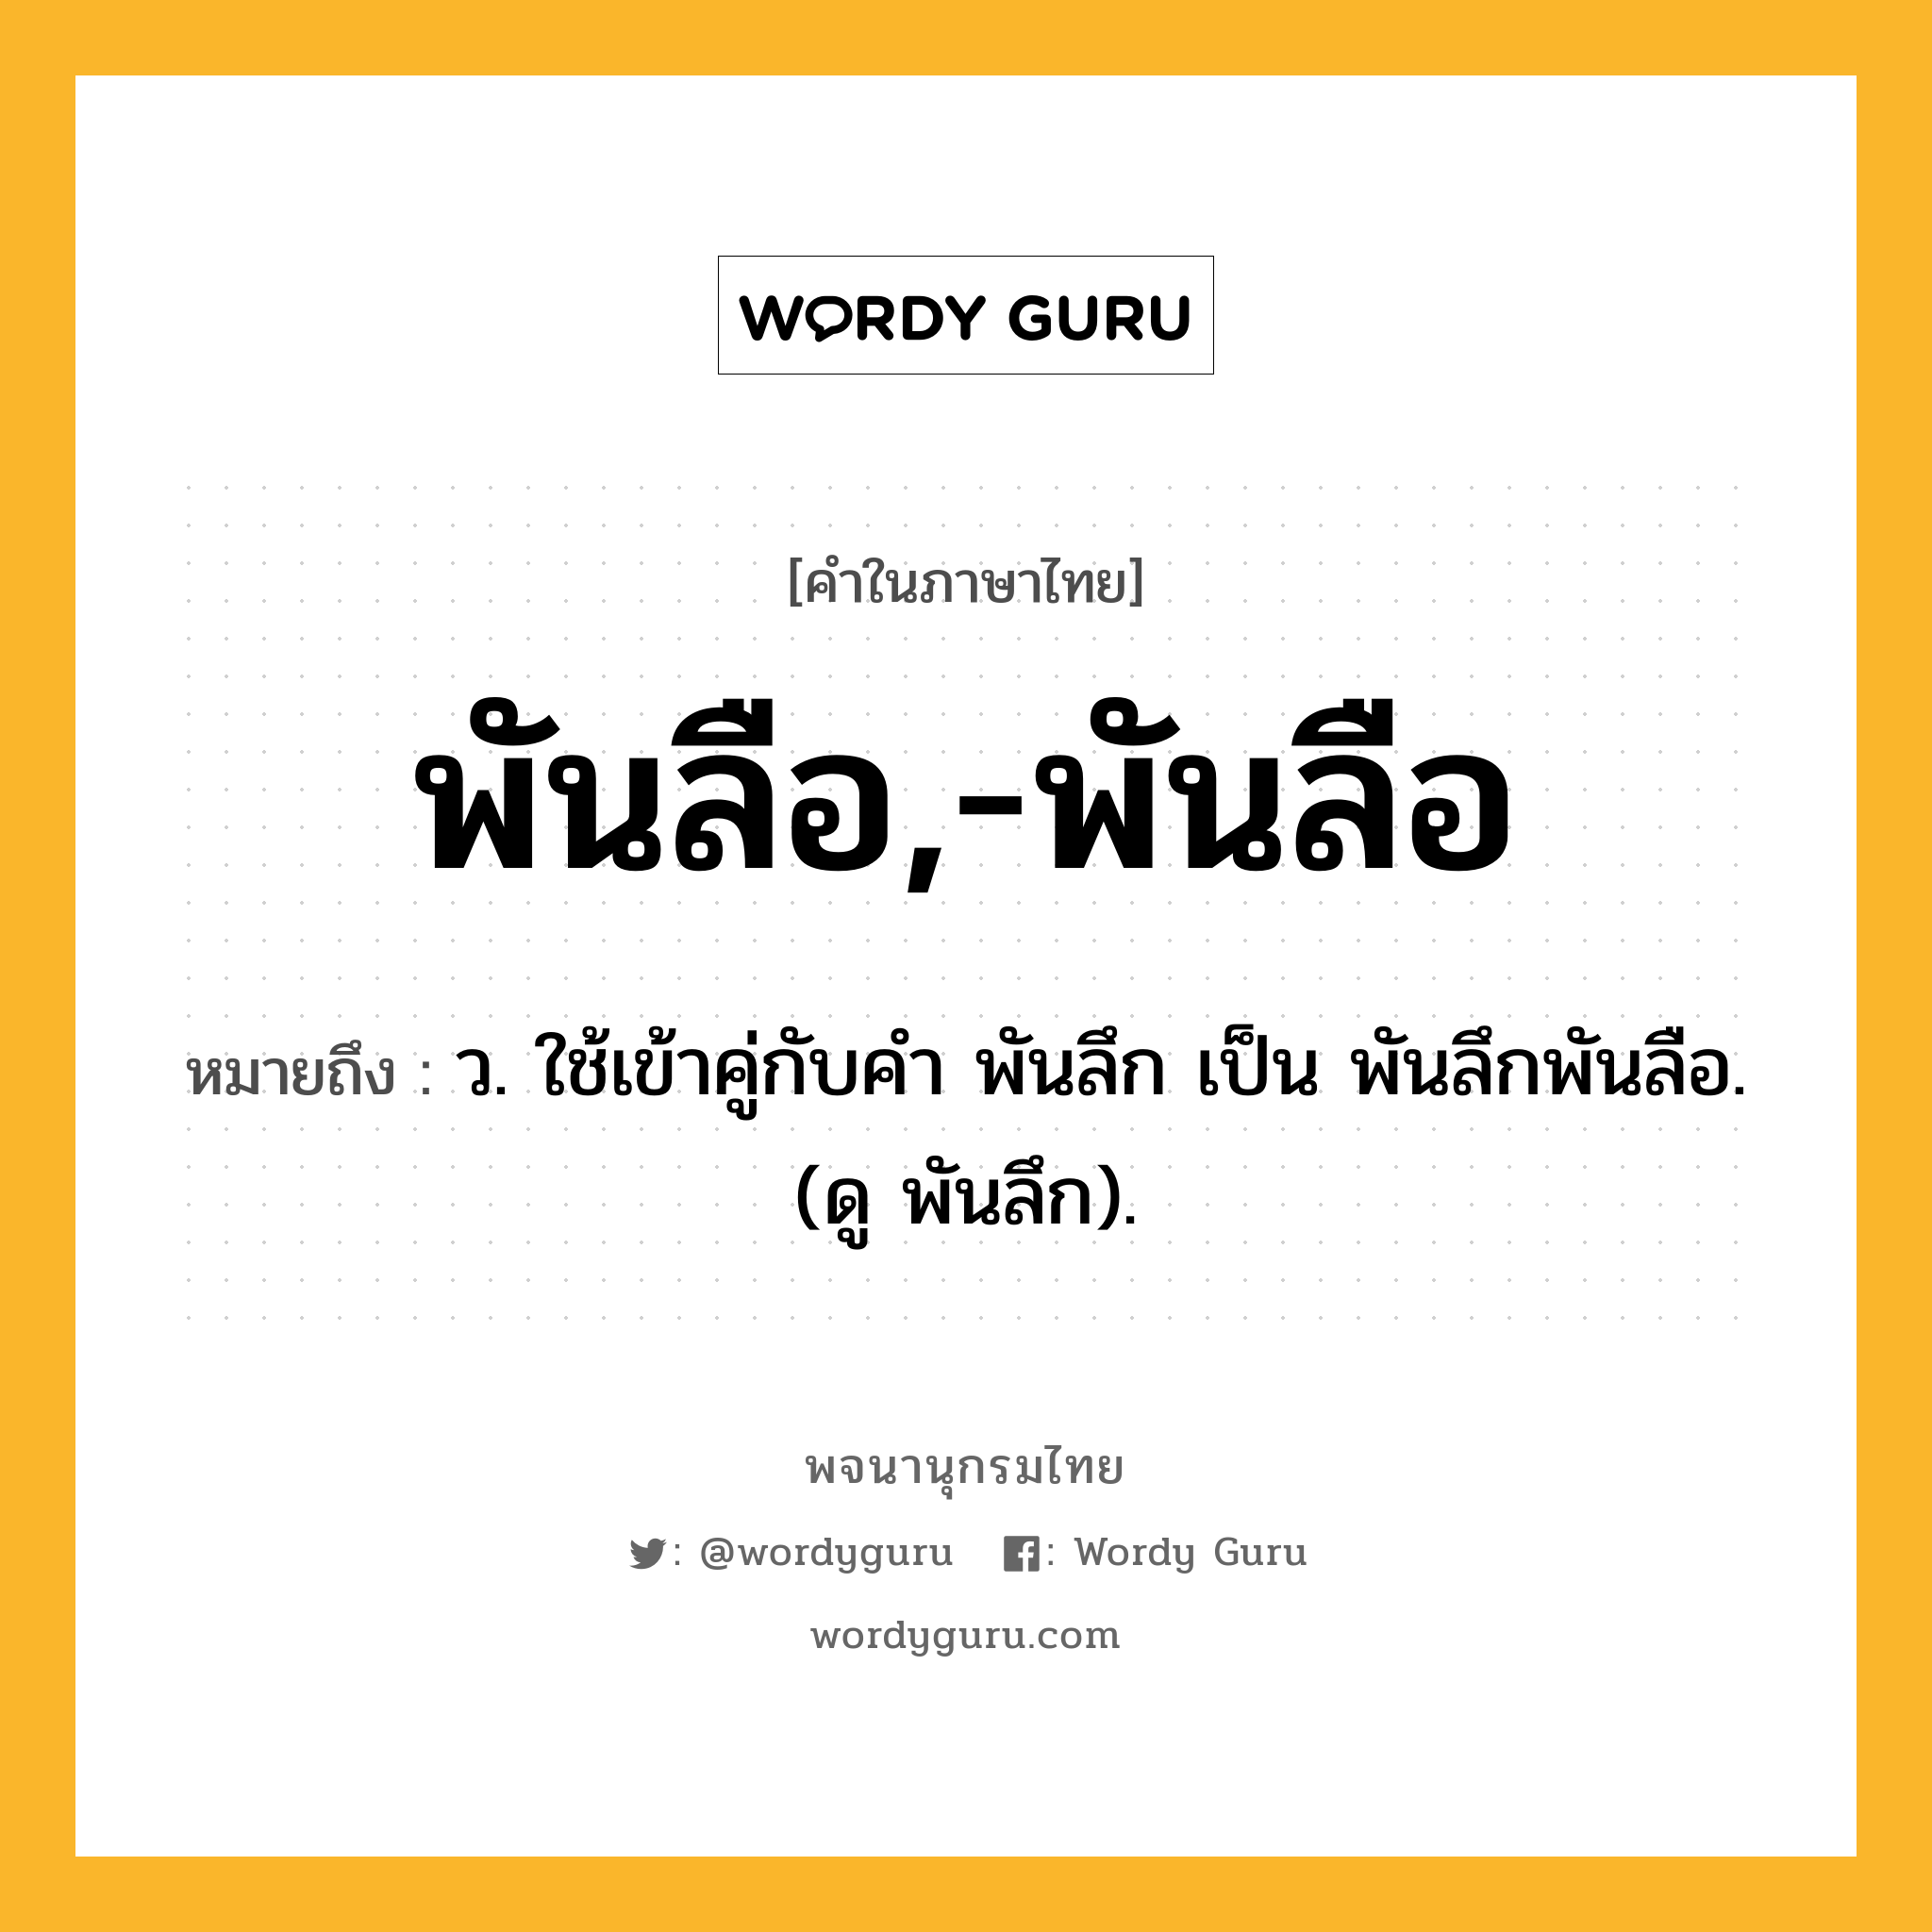 พันลือ,-พันลือ หมายถึงอะไร?, คำในภาษาไทย พันลือ,-พันลือ หมายถึง ว. ใช้เข้าคู่กับคํา พันลึก เป็น พันลึกพันลือ. (ดู พันลึก).